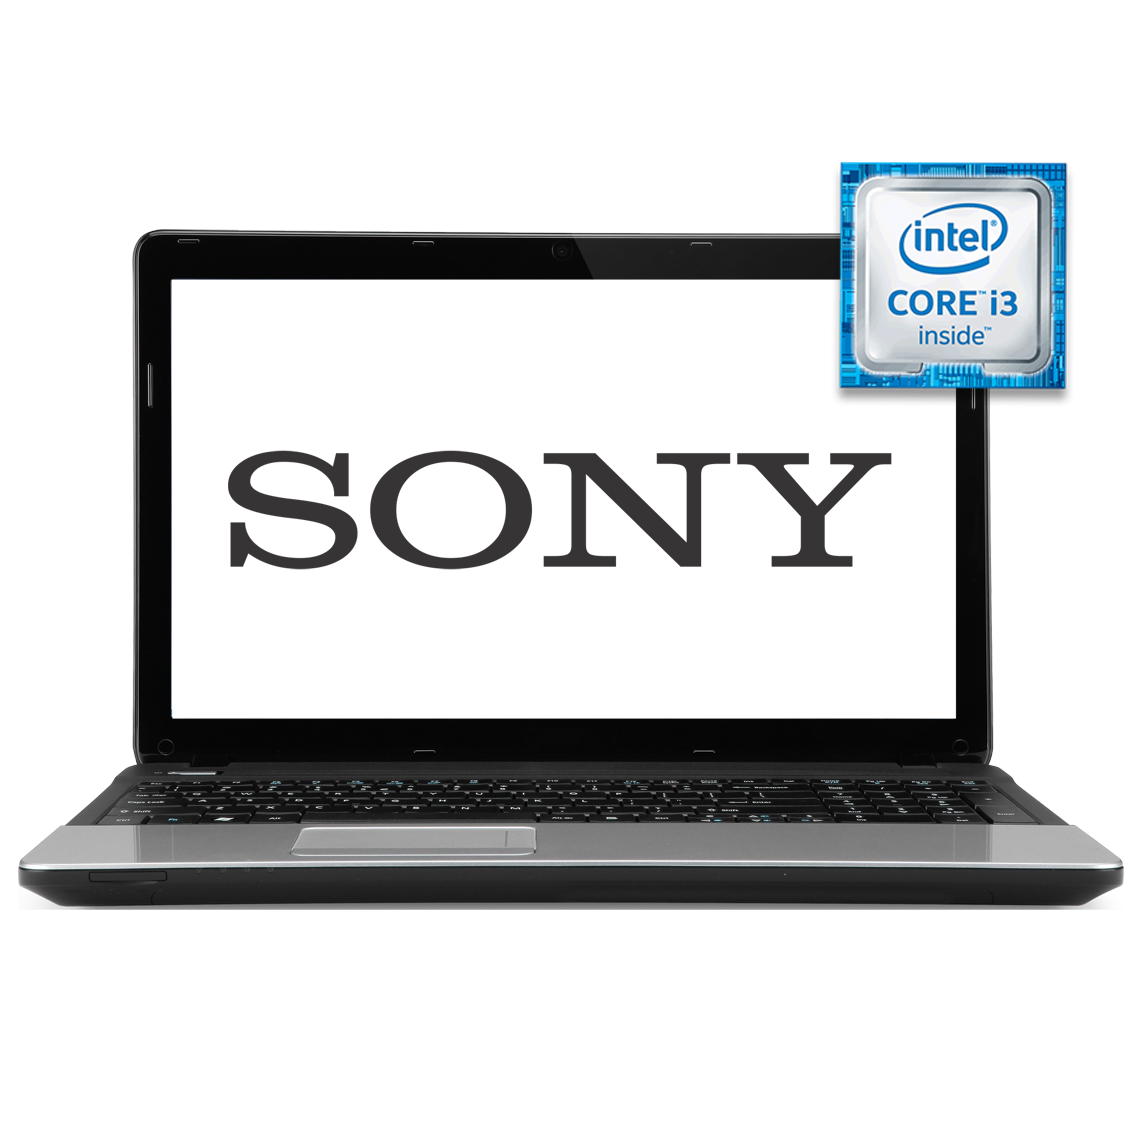 Sony - 15.6 inch Core i3 3rd Gen